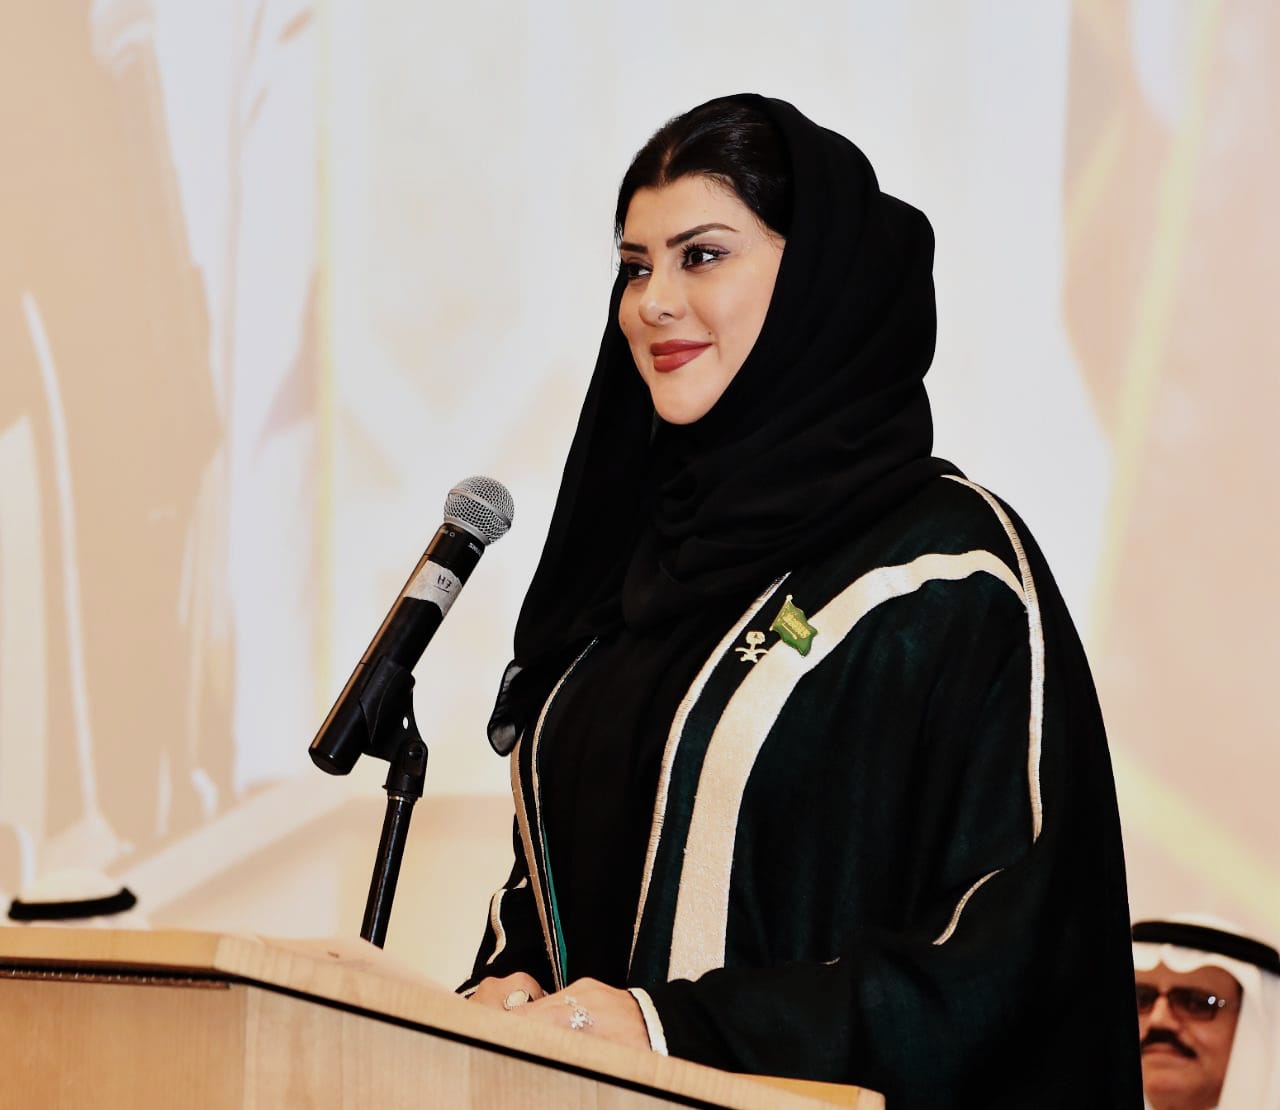 الأميرة دعاء بنت محمد تُطلق مبادرة ” أحب لغتي العربية”